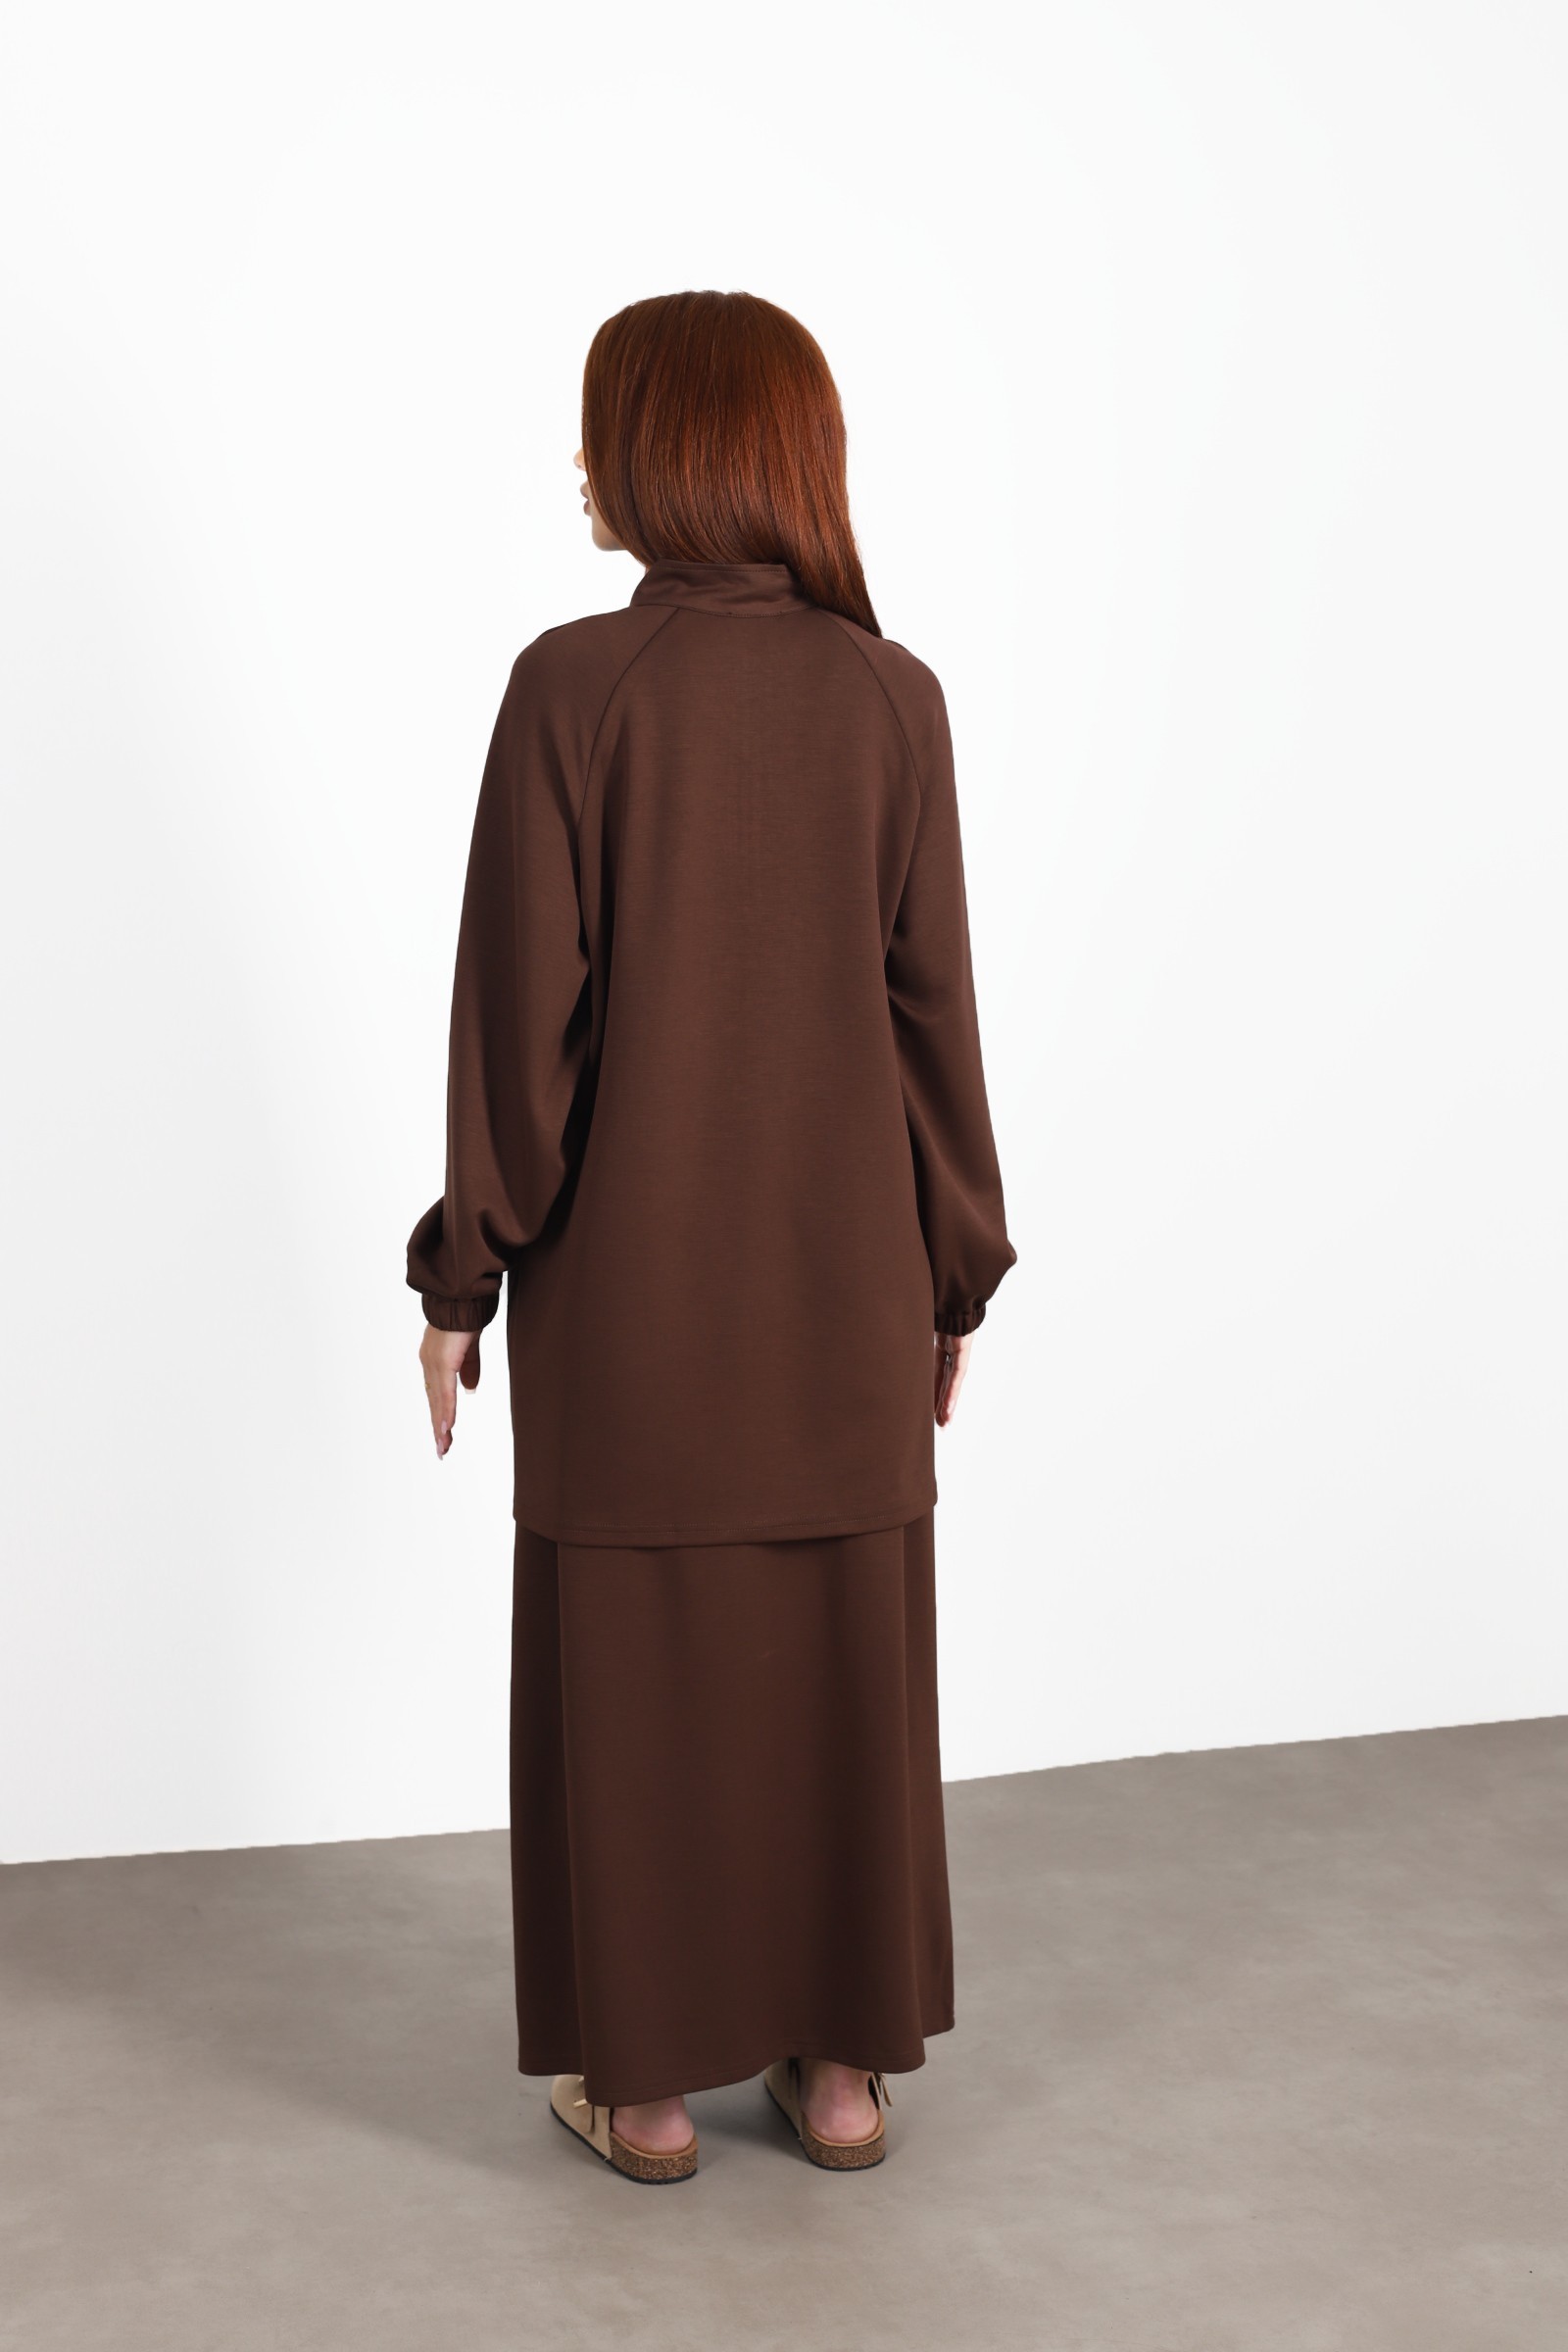 Set woman veiled skirt brown, hijeb woman 2023